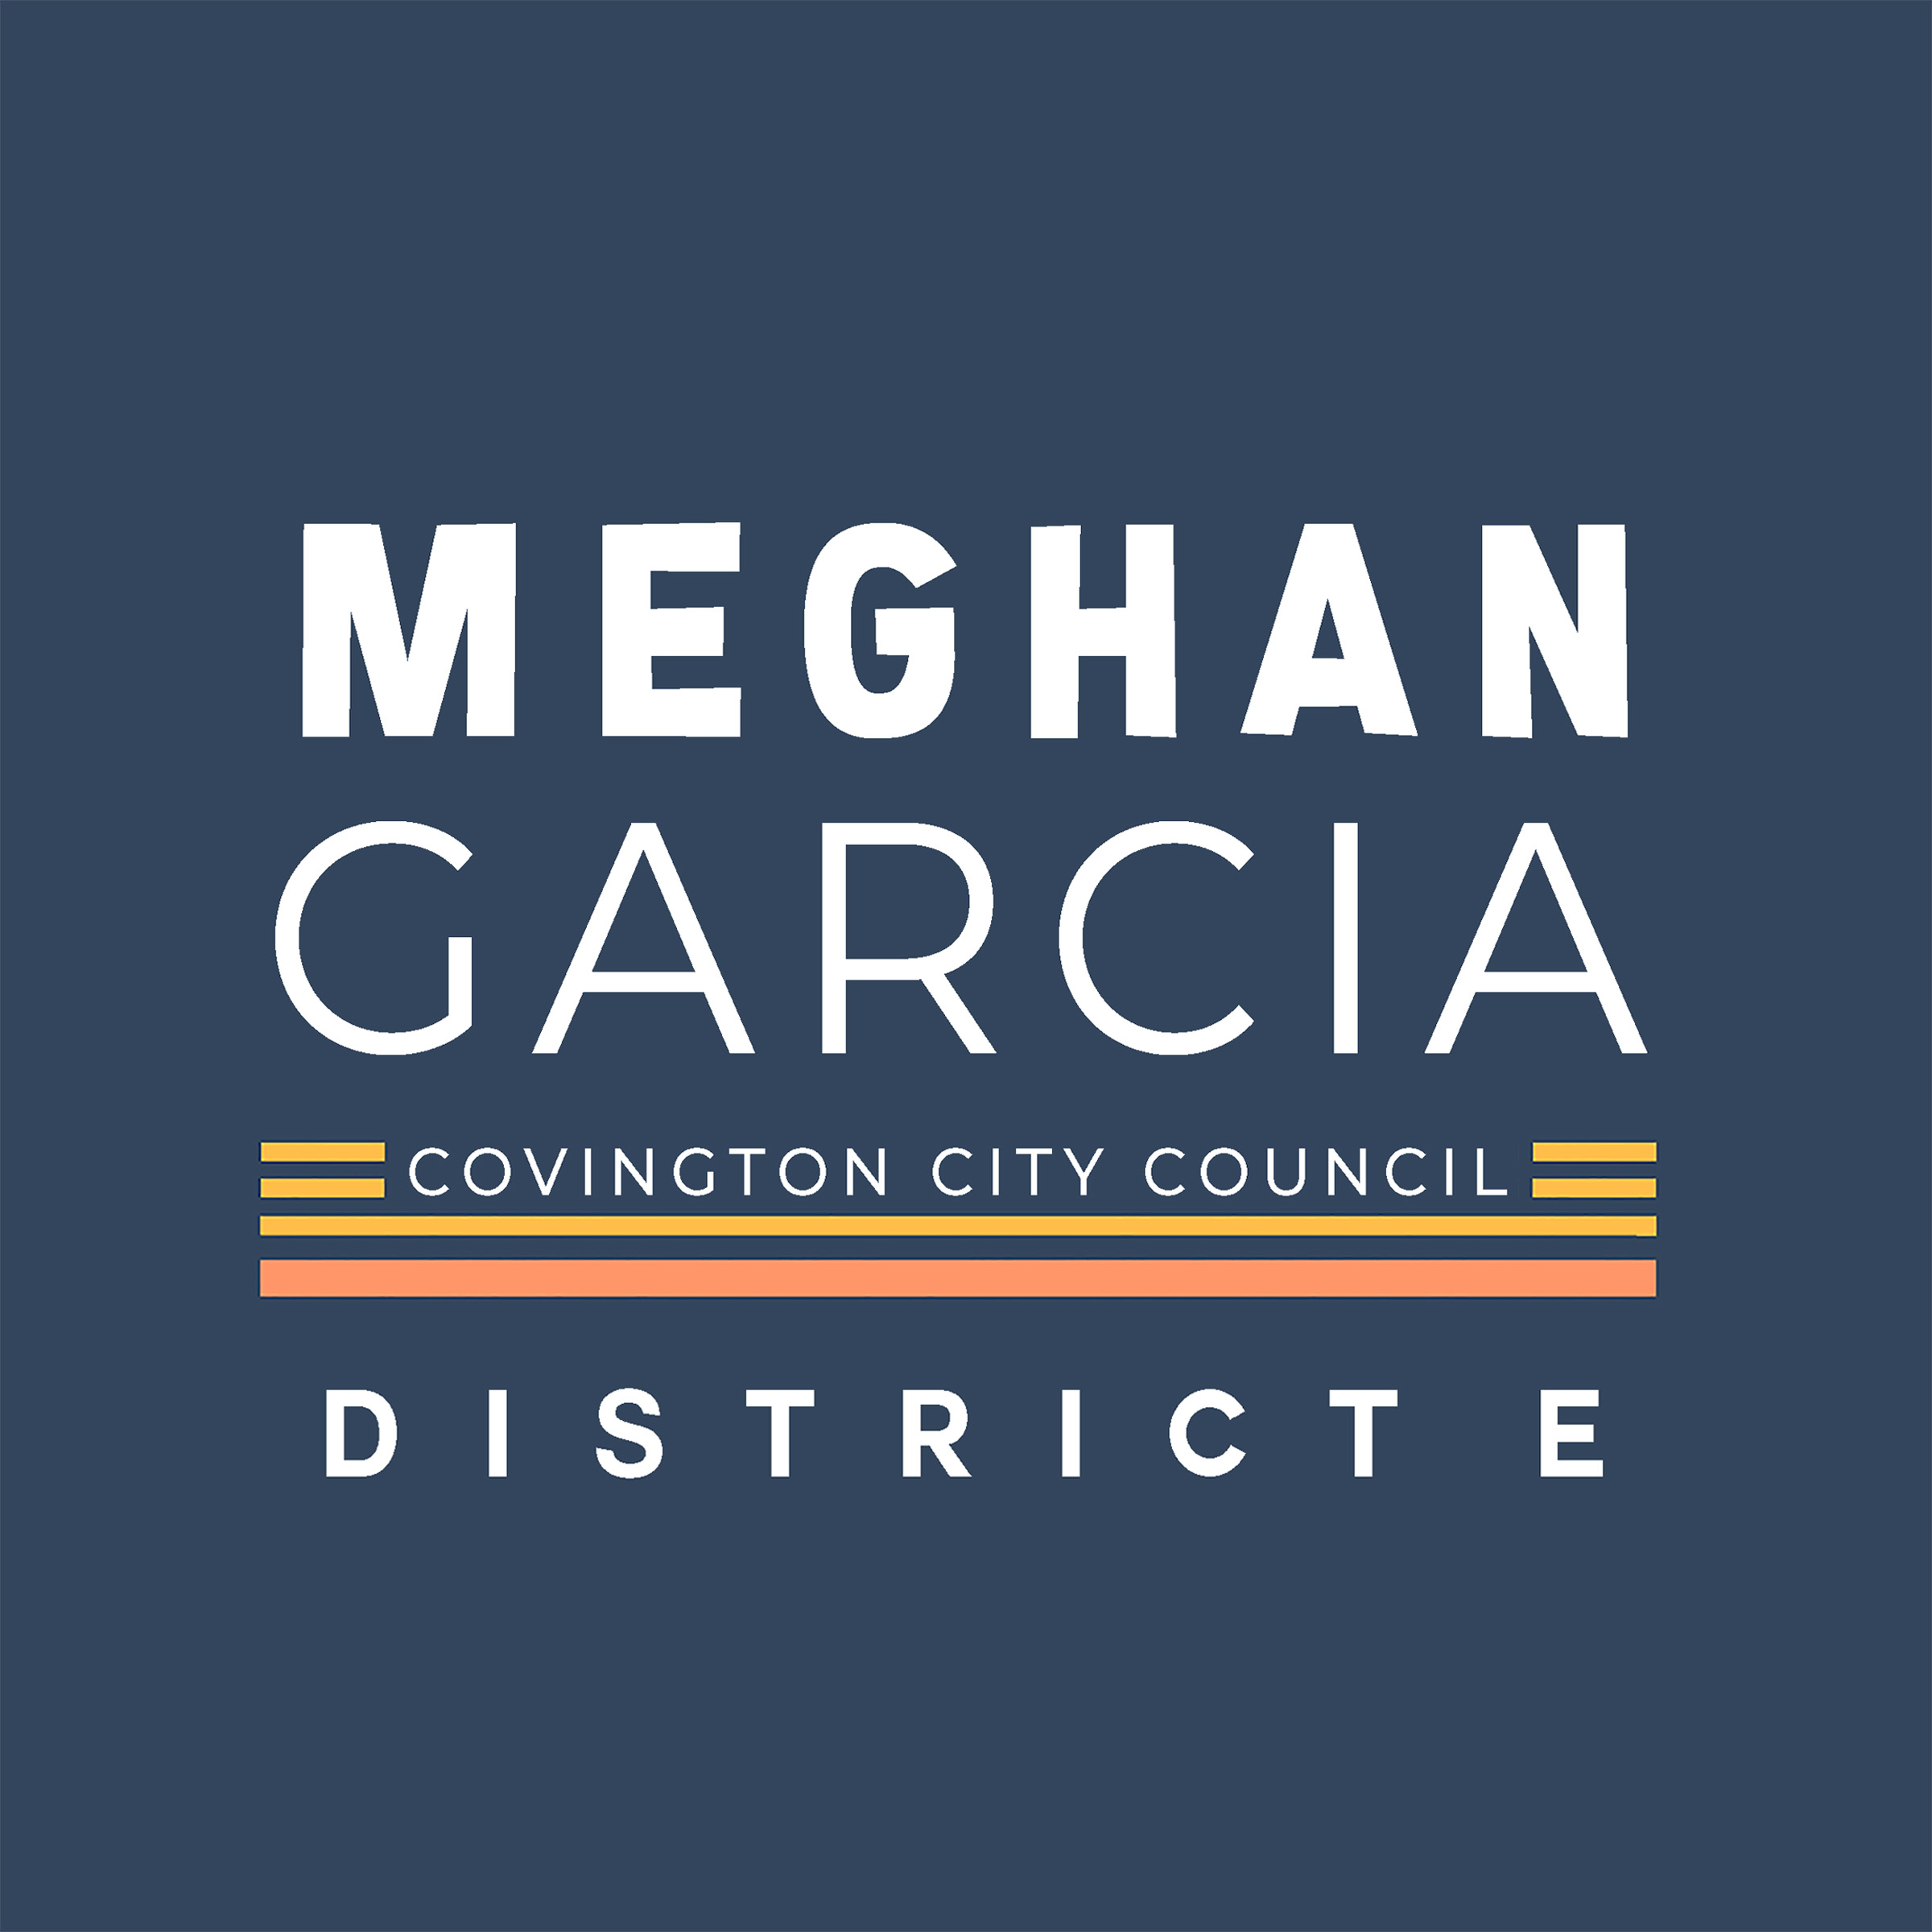 Meghan Garcia Announces Candidacy for Covington City Council District E